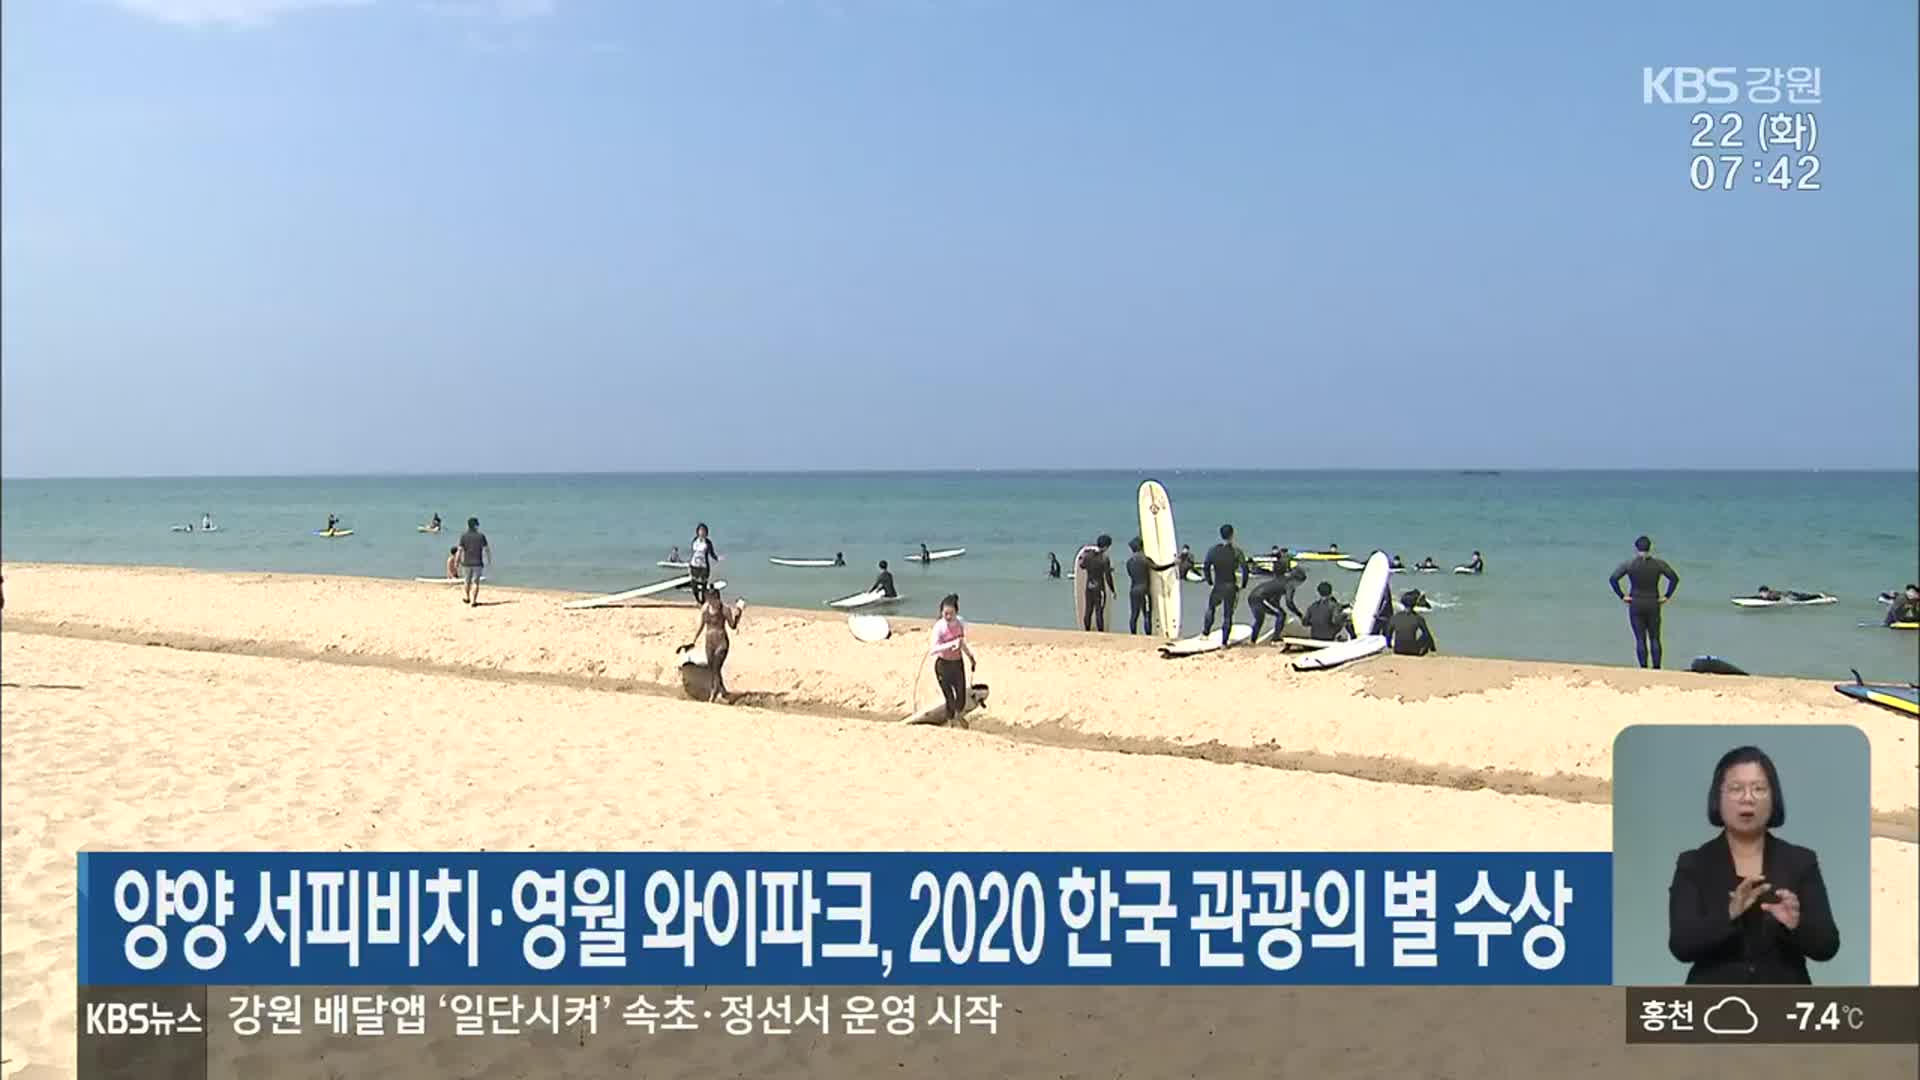 양양 서피비치·영월 와이파크, 2020 한국 관광의 별 수상